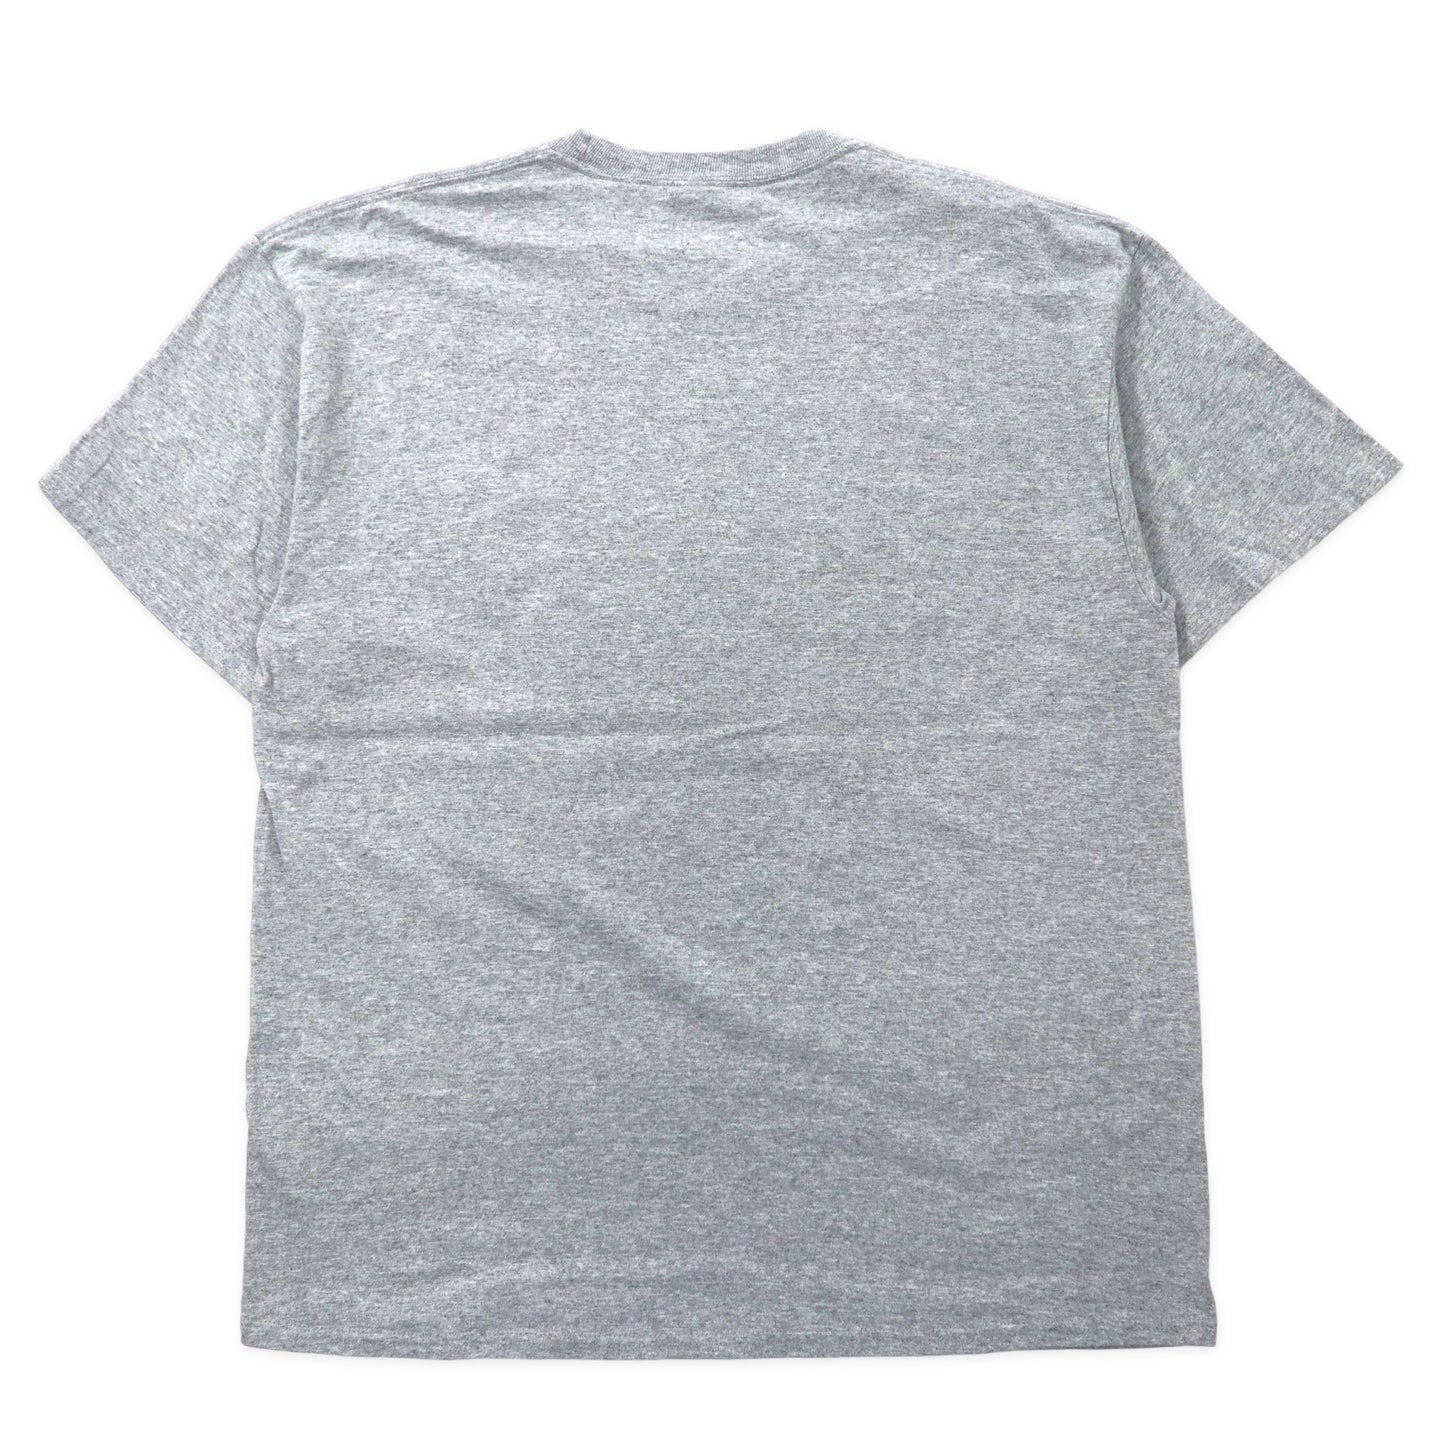 US NAVY Tシャツ XL グレー コットン ミリタリーフィジカル トレーニング ビッグサイズ